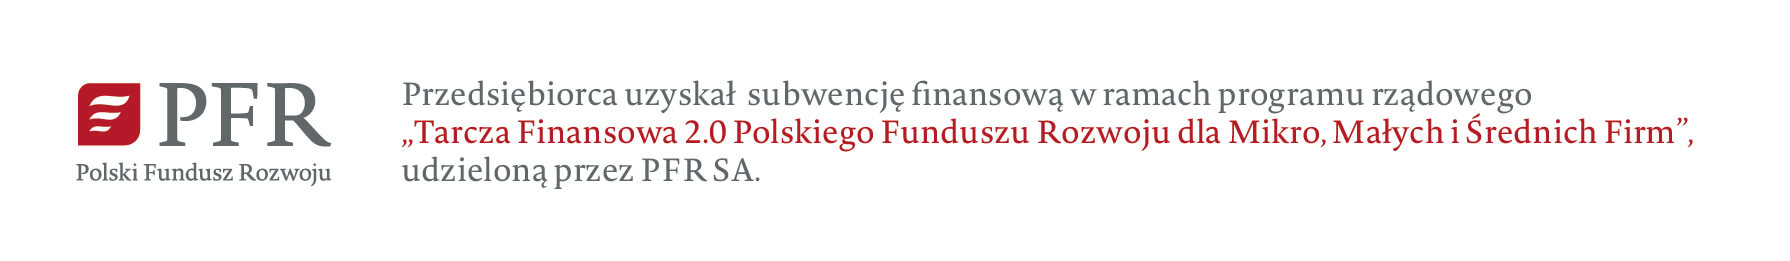 polski fundusz rozwoju